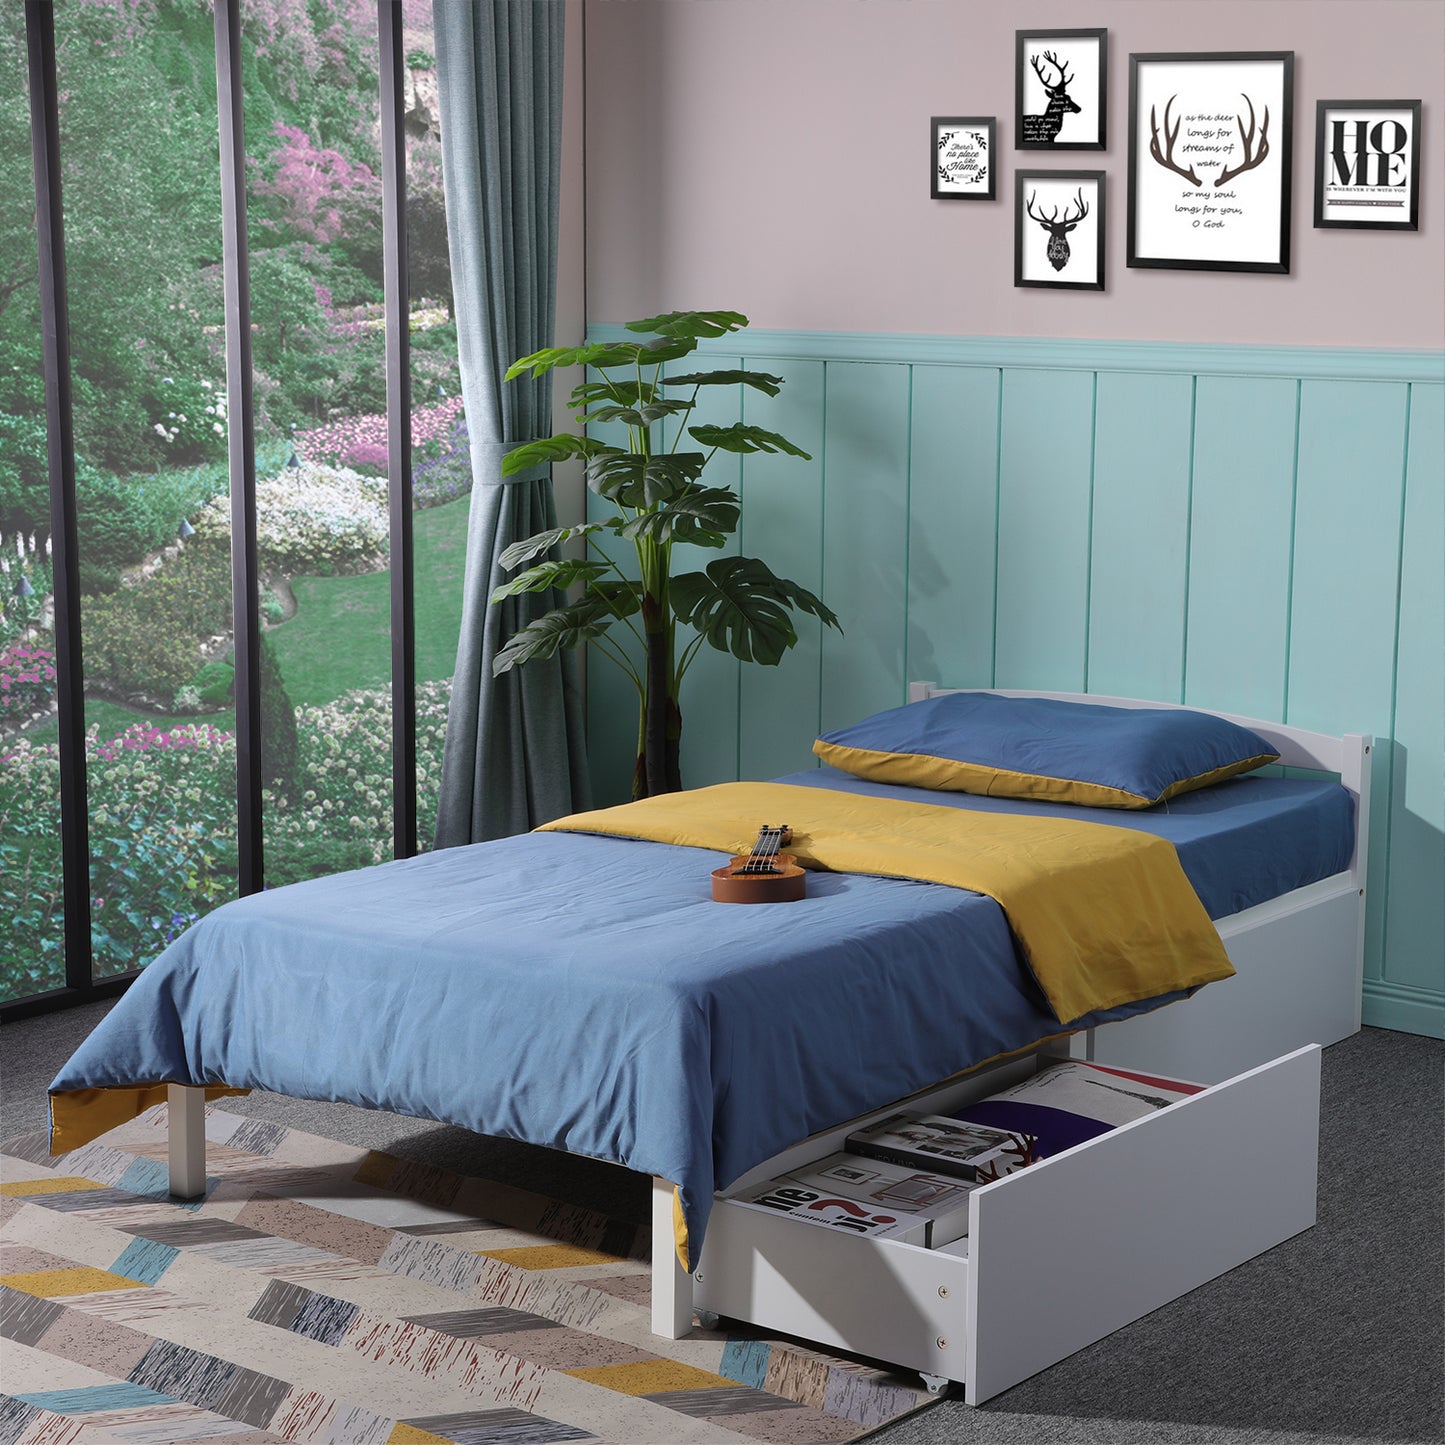 2 tiroirs - Peut être utilisé comme tiroir de lit en bois - tiroir de rangement - style simple - blanc